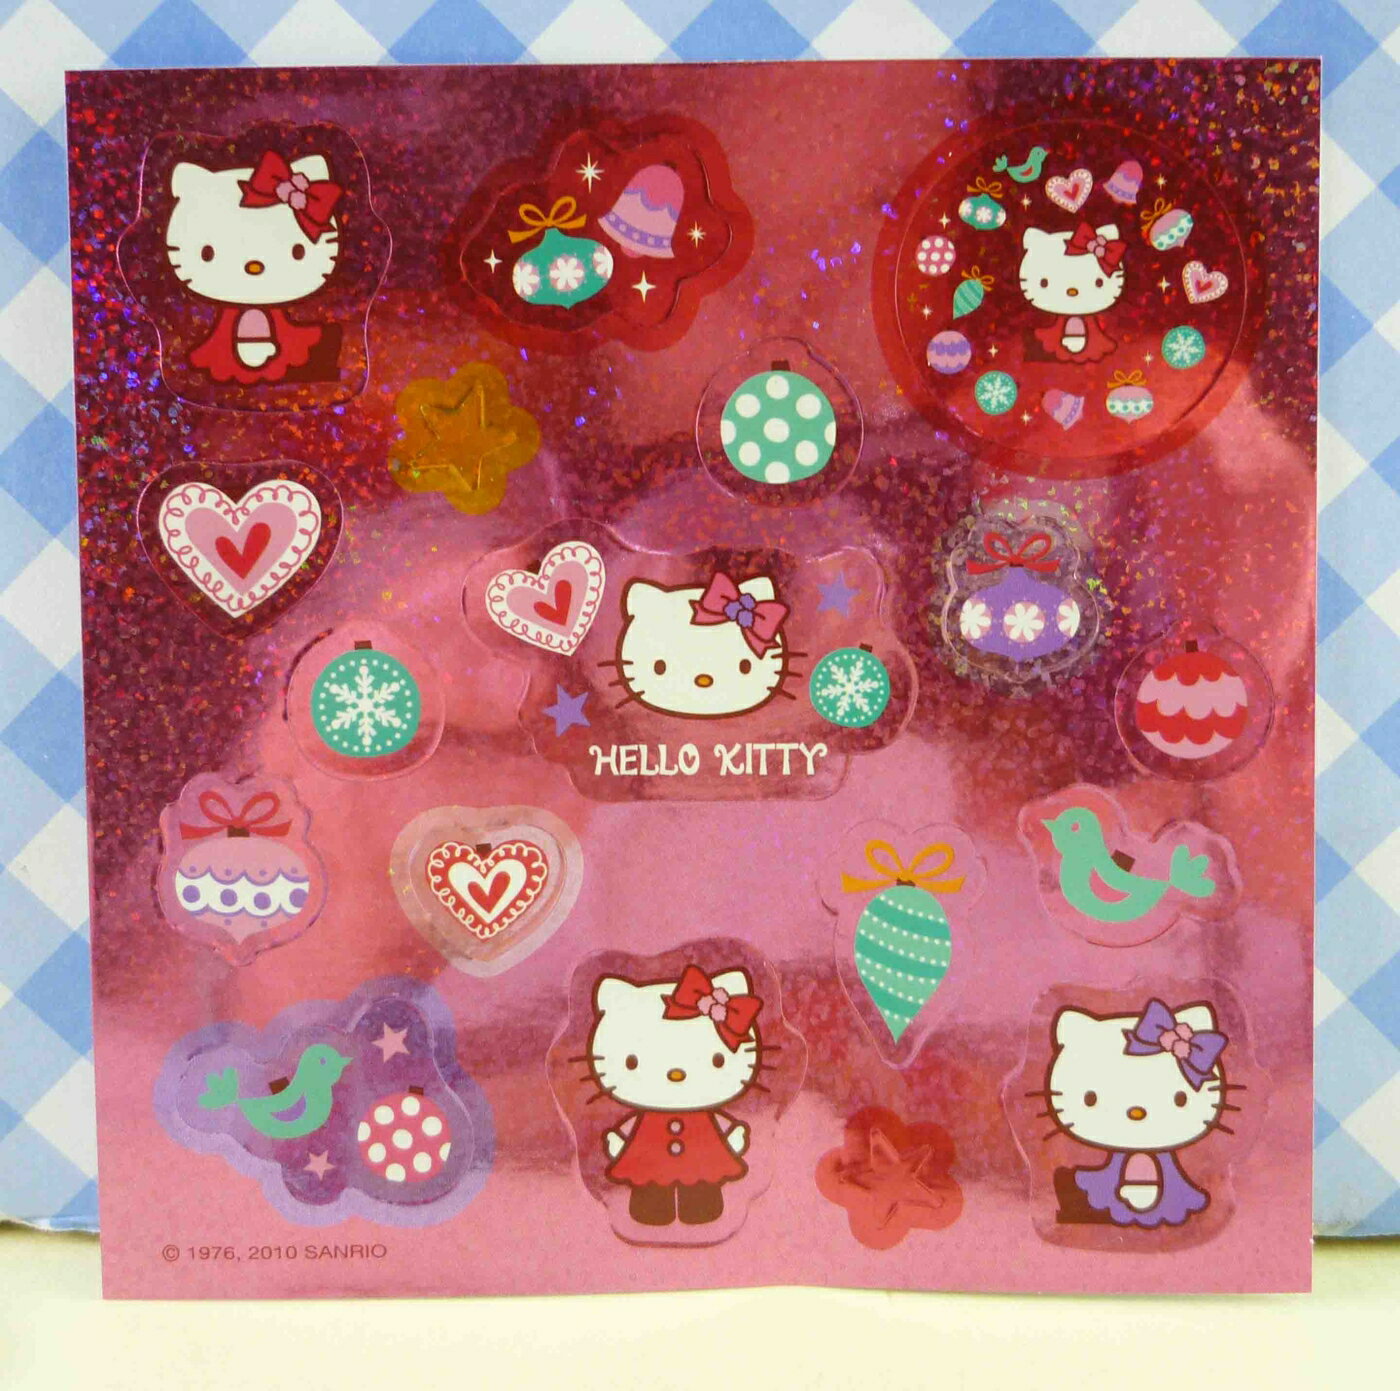 【震撼精品百貨】Hello Kitty 凱蒂貓 KITTY貼紙-閃亮粉鳥 震撼日式精品百貨